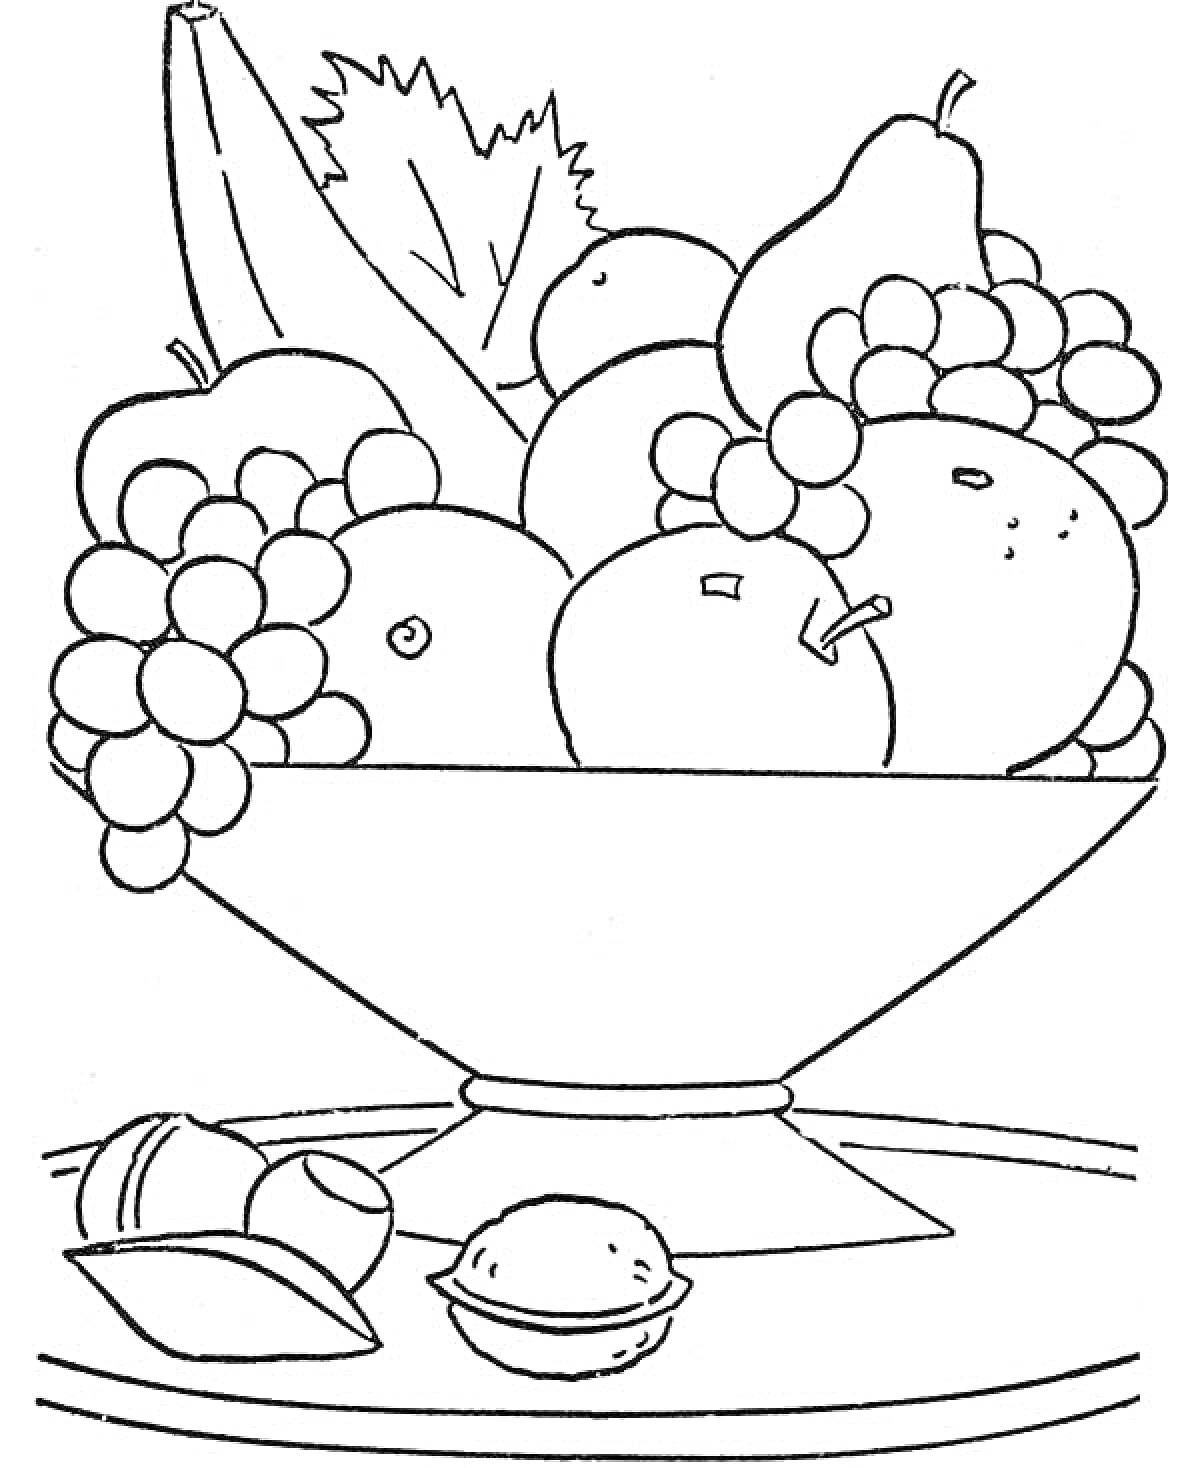 Раскраска Натюрморт с фруктами и орехами в вазе